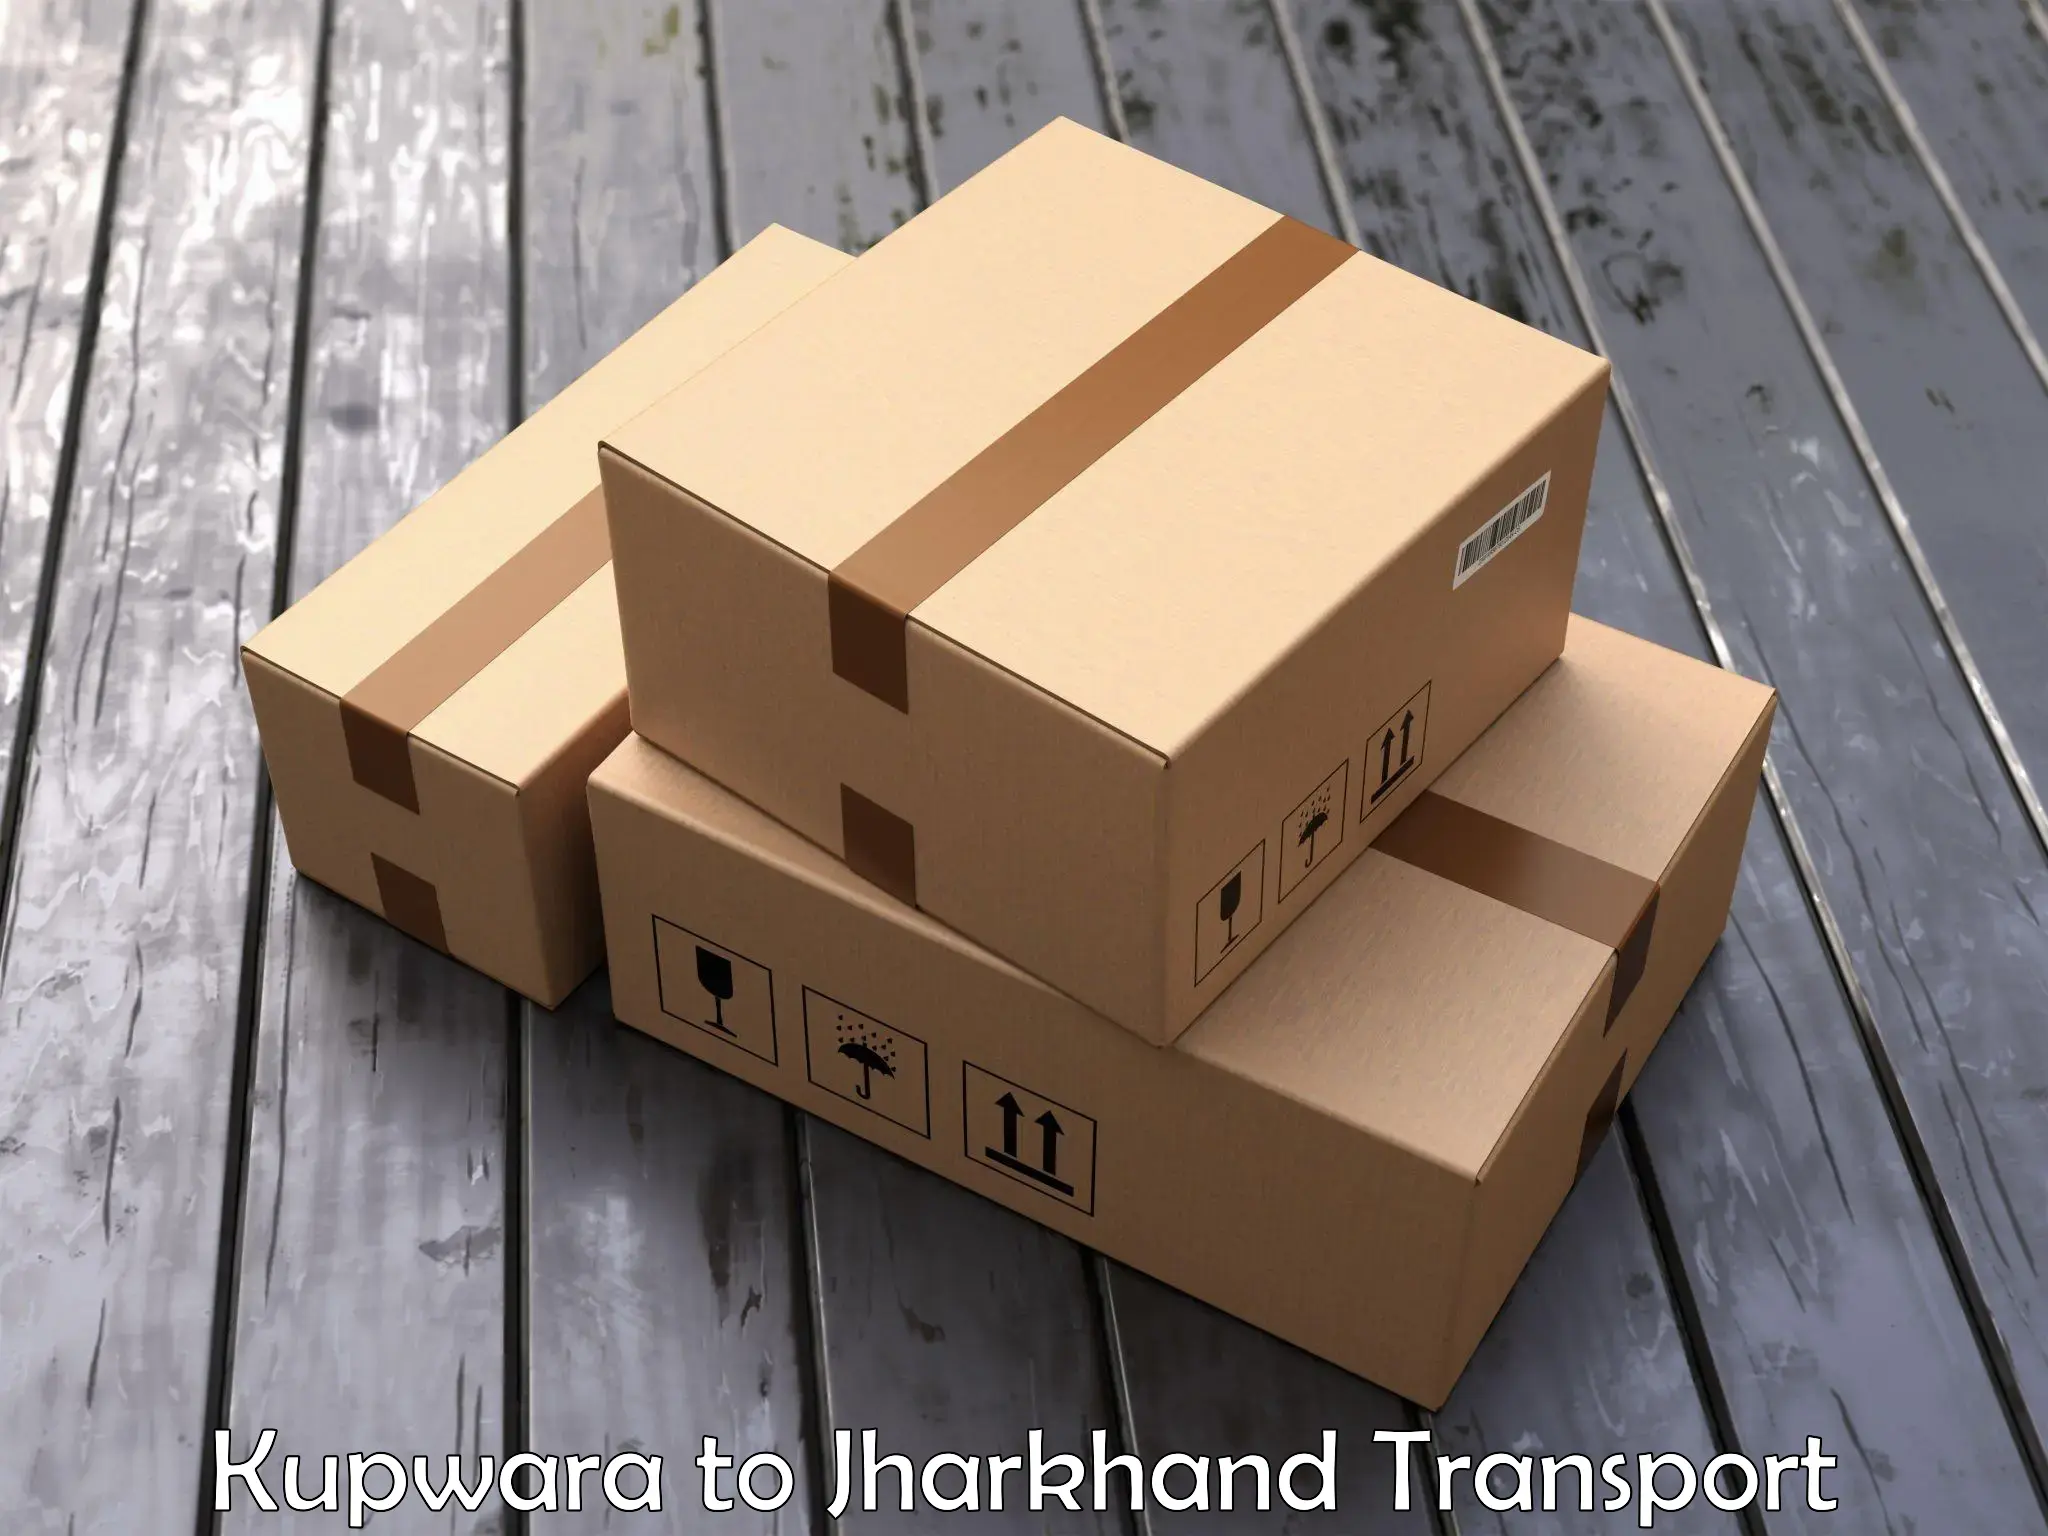 Commercial transport service Kupwara to Medininagar